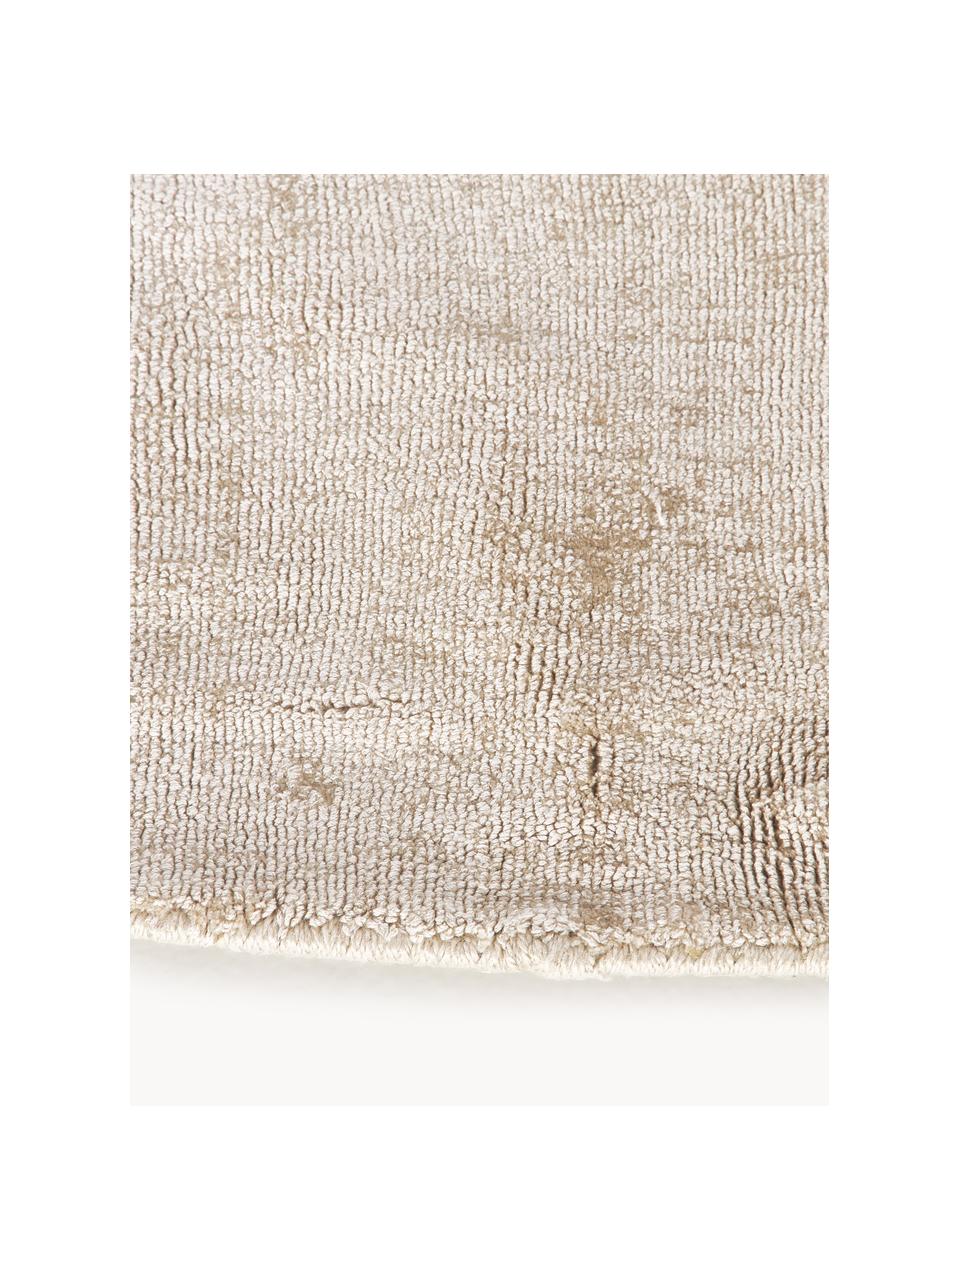 Tappeto rotondo in viscosa fatto a mano Jane, Retro: 100% cotone, Beige chiaro, Ø 250 cm (taglia XL)